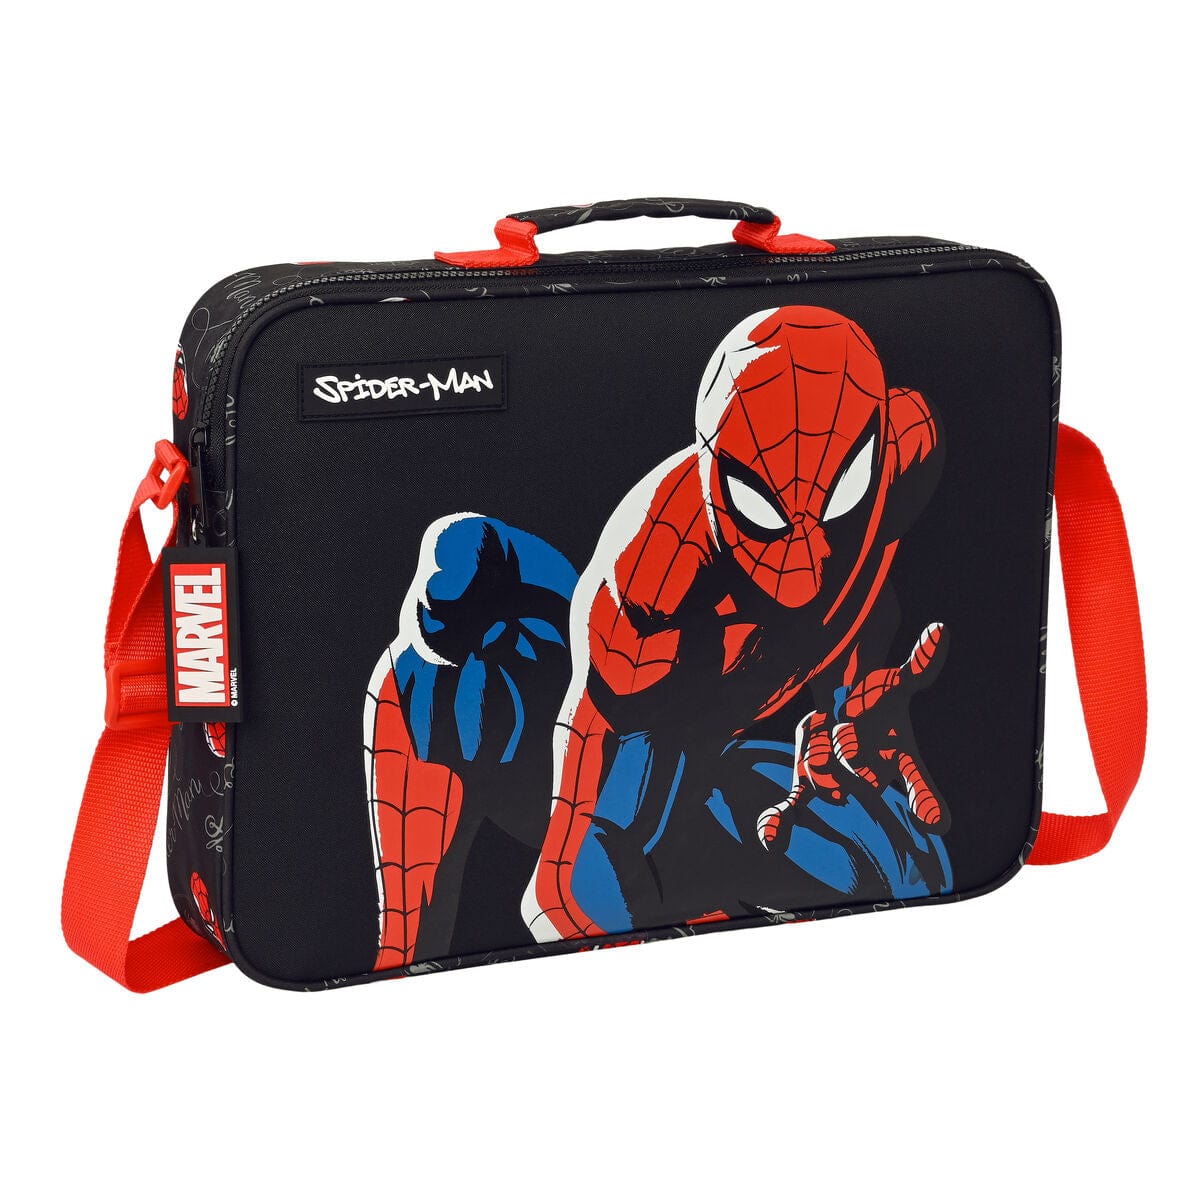 Spiderman Spielzeug | Kostüme > Schulzubehör > Schulranzen Schultasche Spiderman Hero Schwarz (38 x 28 x 6 cm)